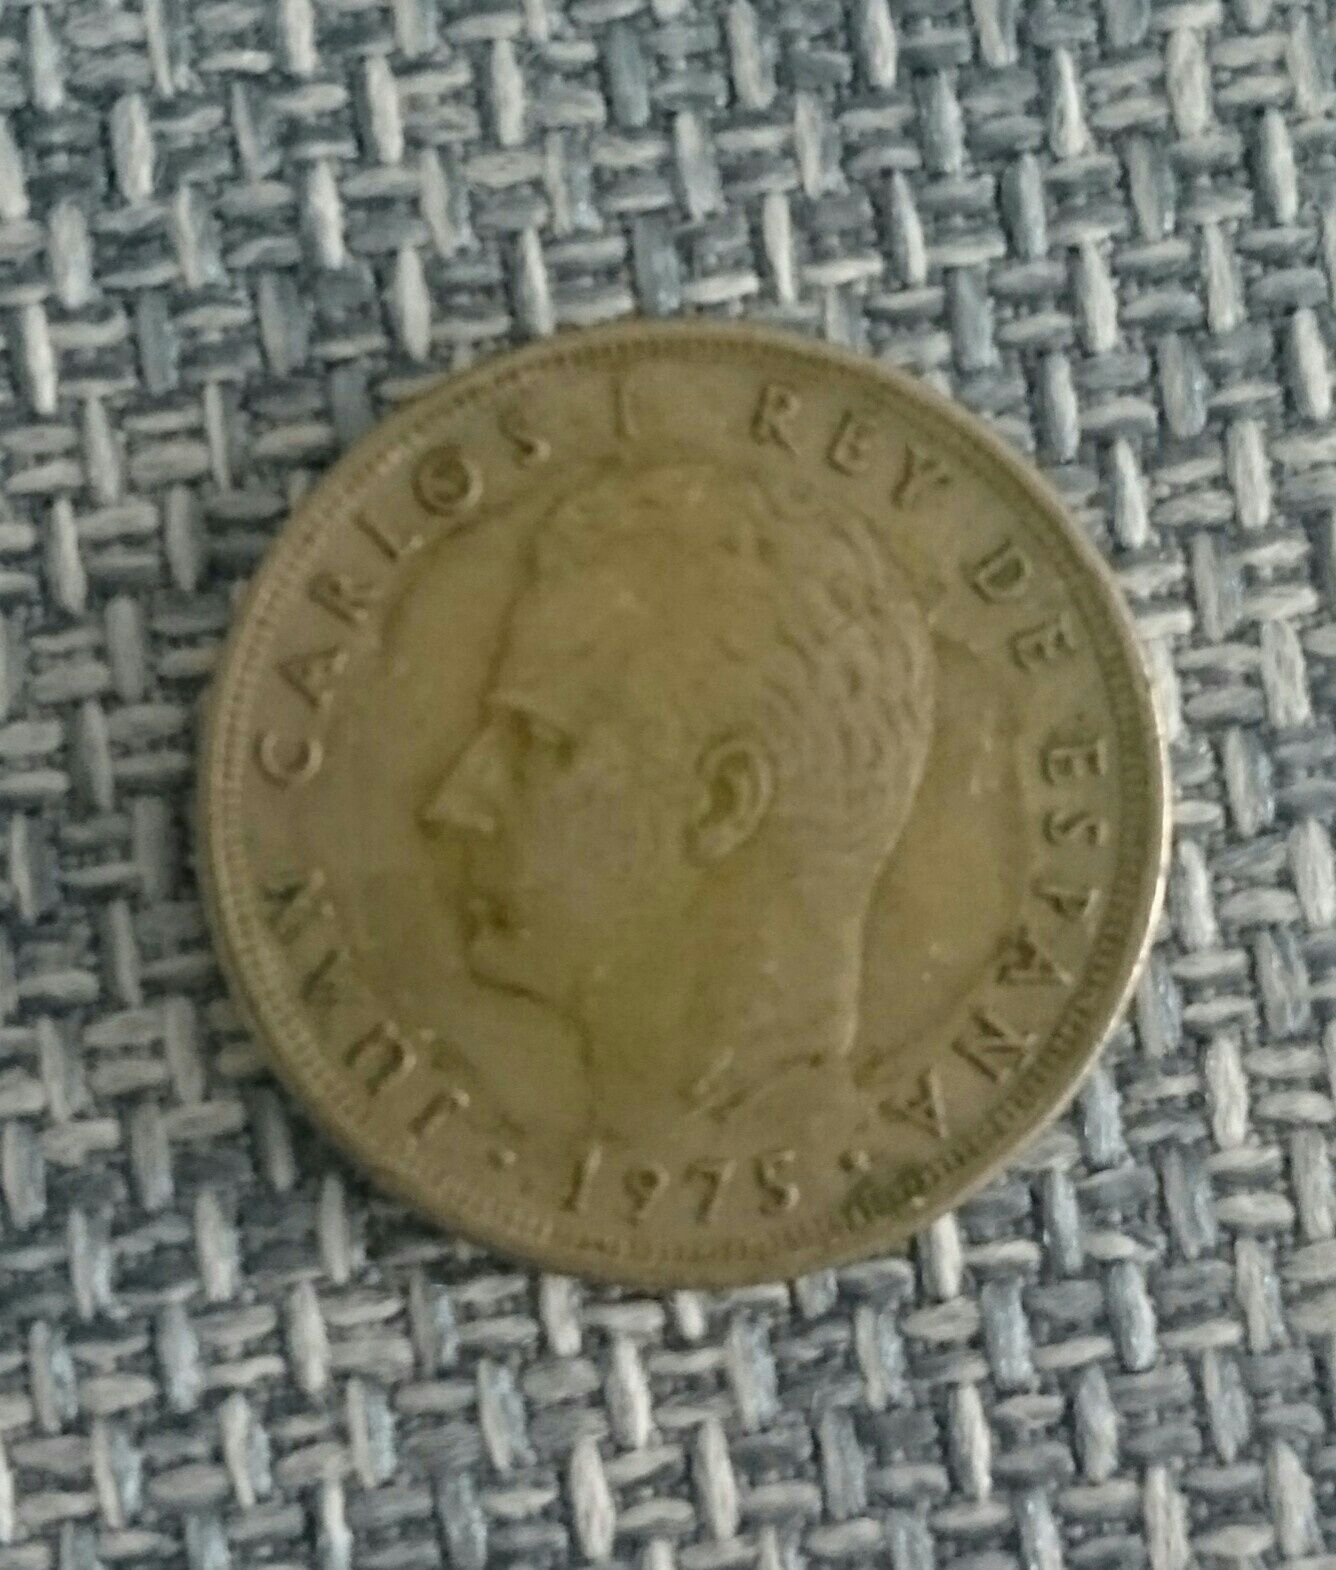 Moneta 5 peset Hiszpania 1975 r.